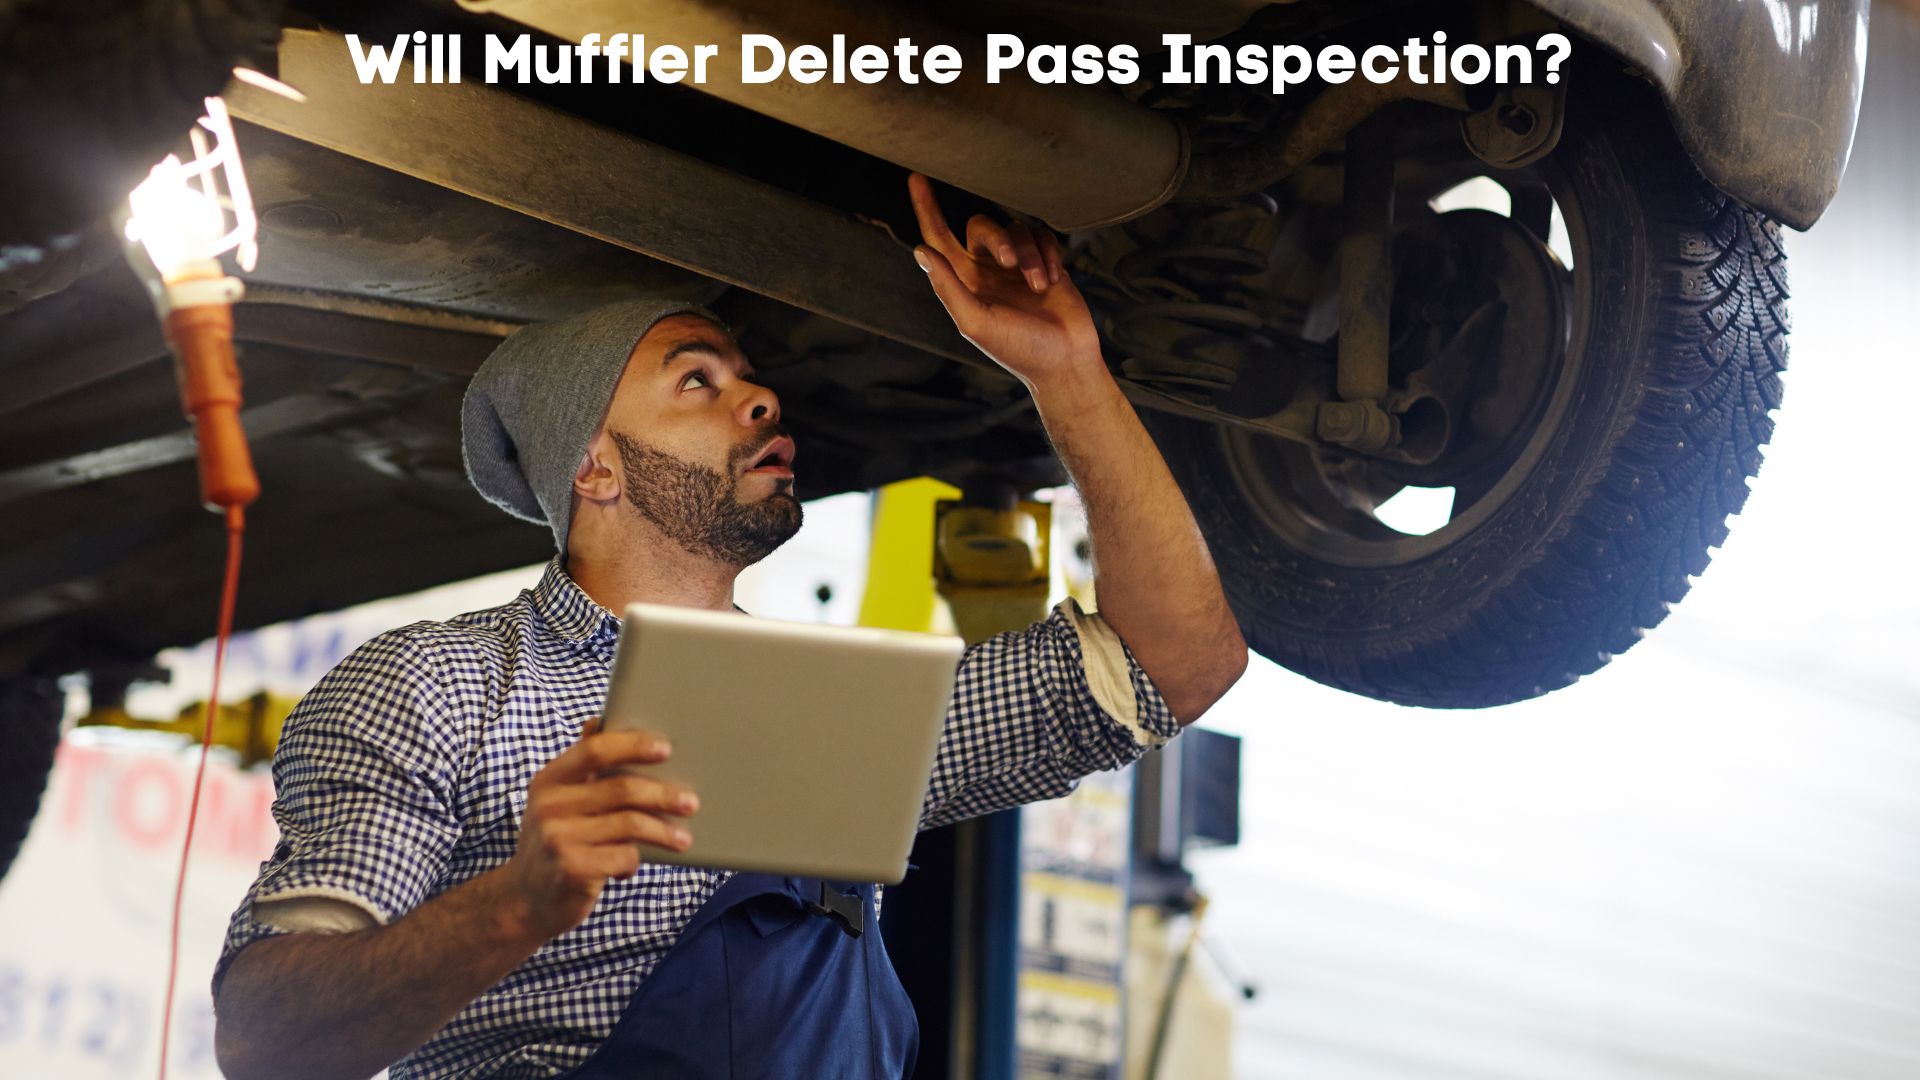 will muffler delete pass inspection in nc, ny, pa, texas, va, delaware, nj, louisiana, ca, massachusetts